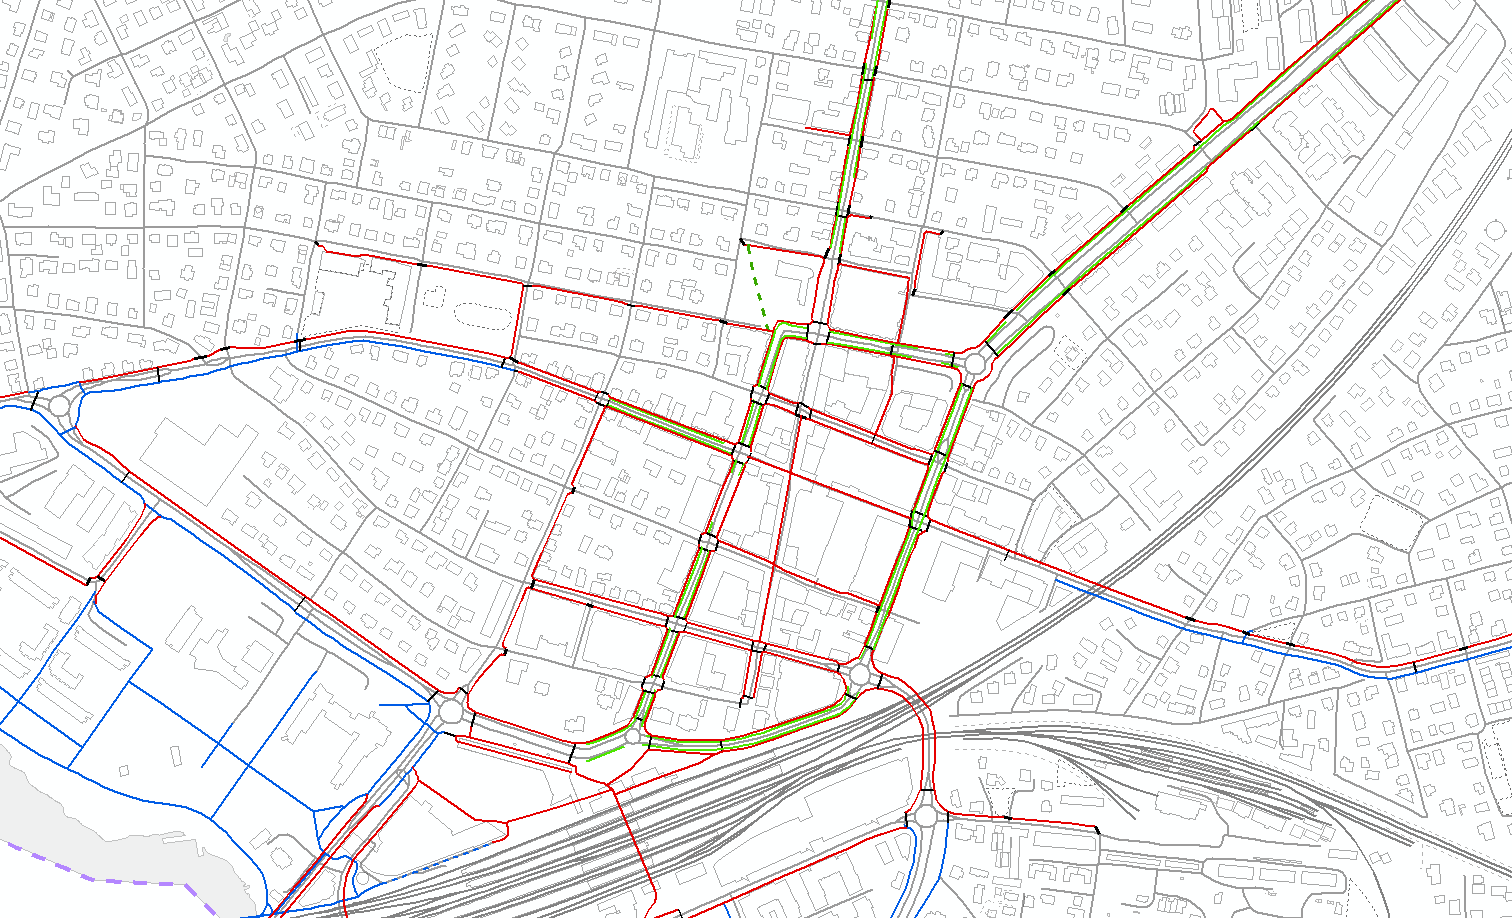 Fig. 5 viser eksisterende fortau, gang-/sykkelveg og sykkelfelt i Lillestrøm sentrum. Røde linjer er fortau, blå er g/s-veg, grønne er sykkelfelt.